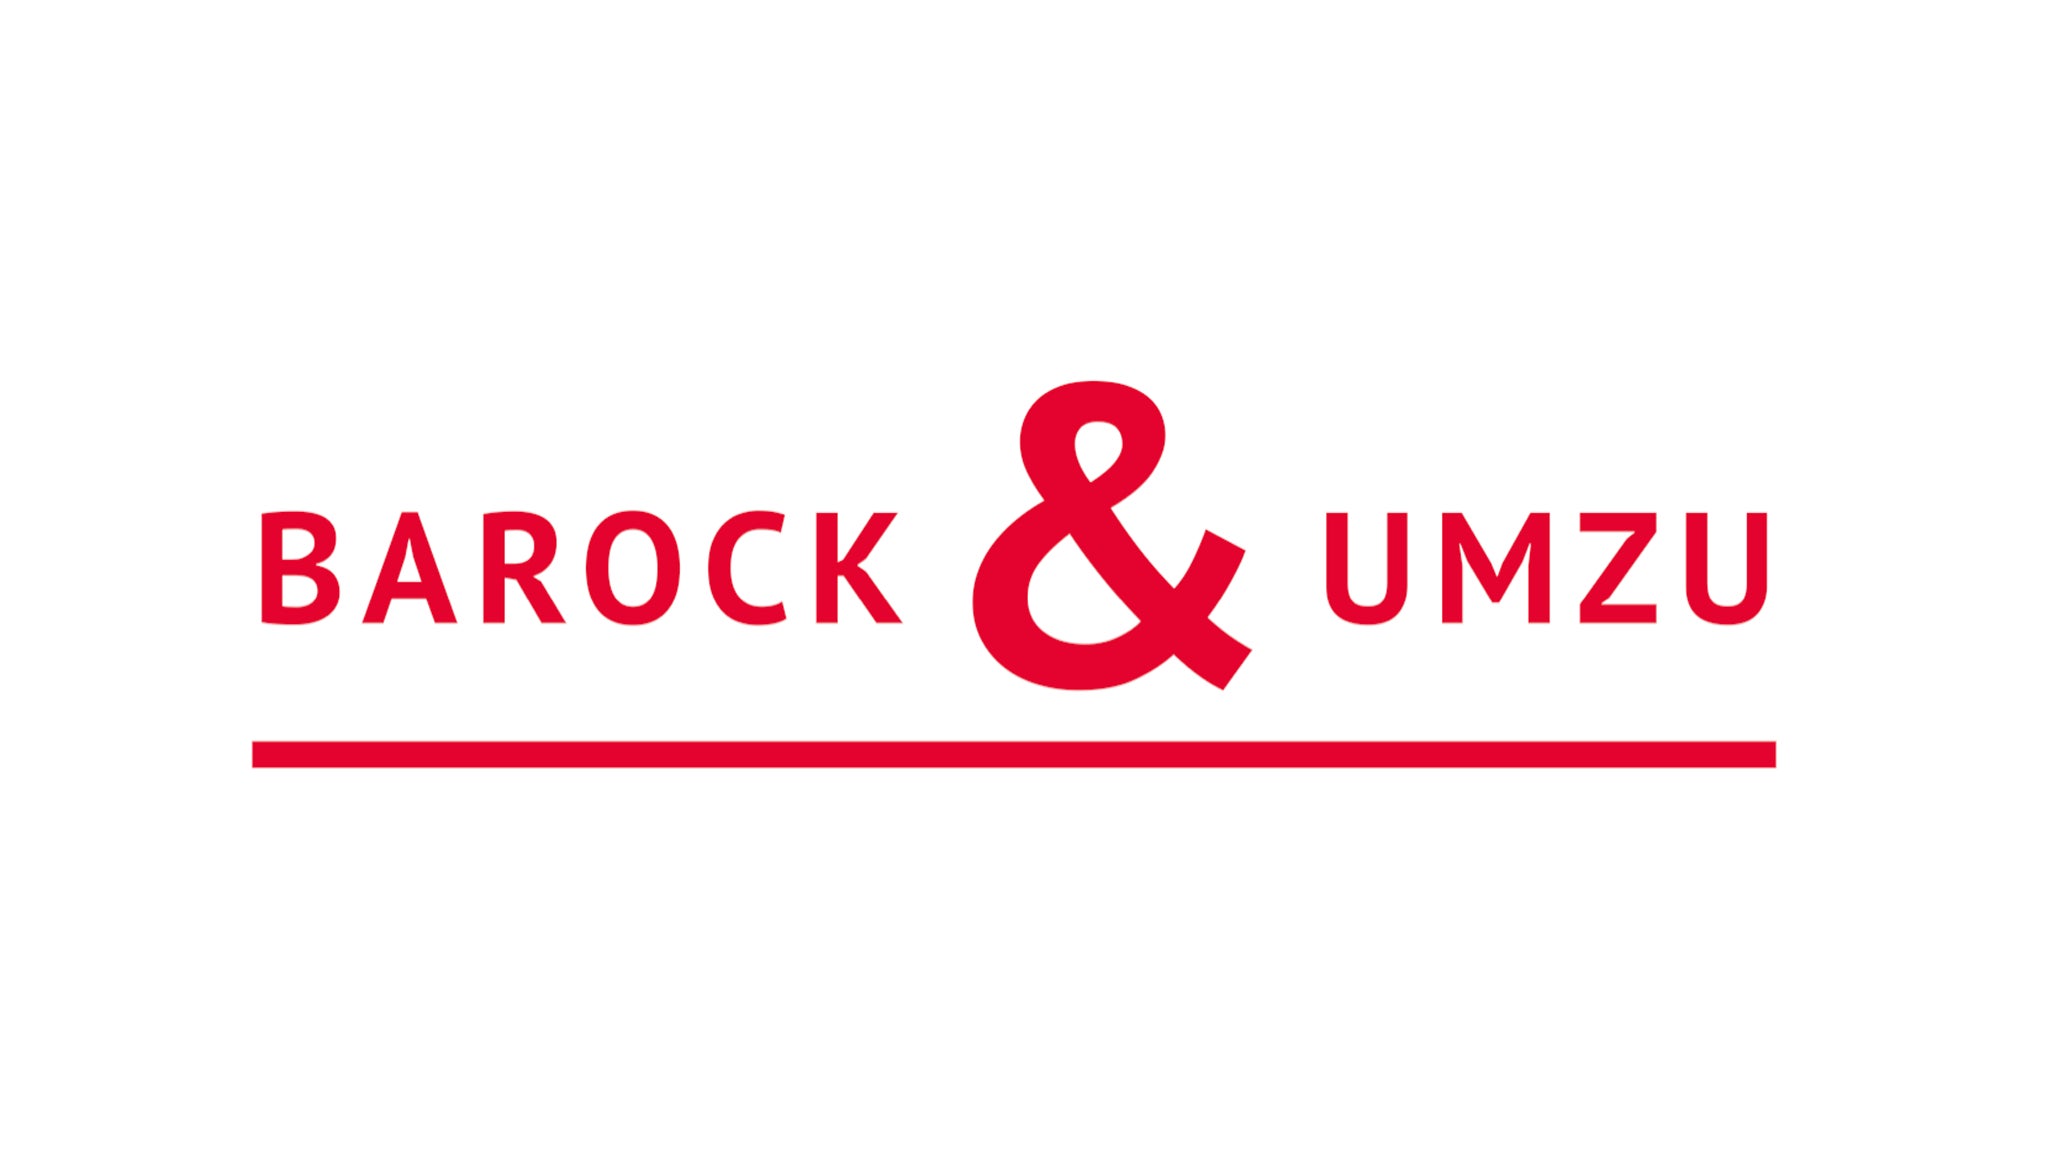 Barock & Umzu